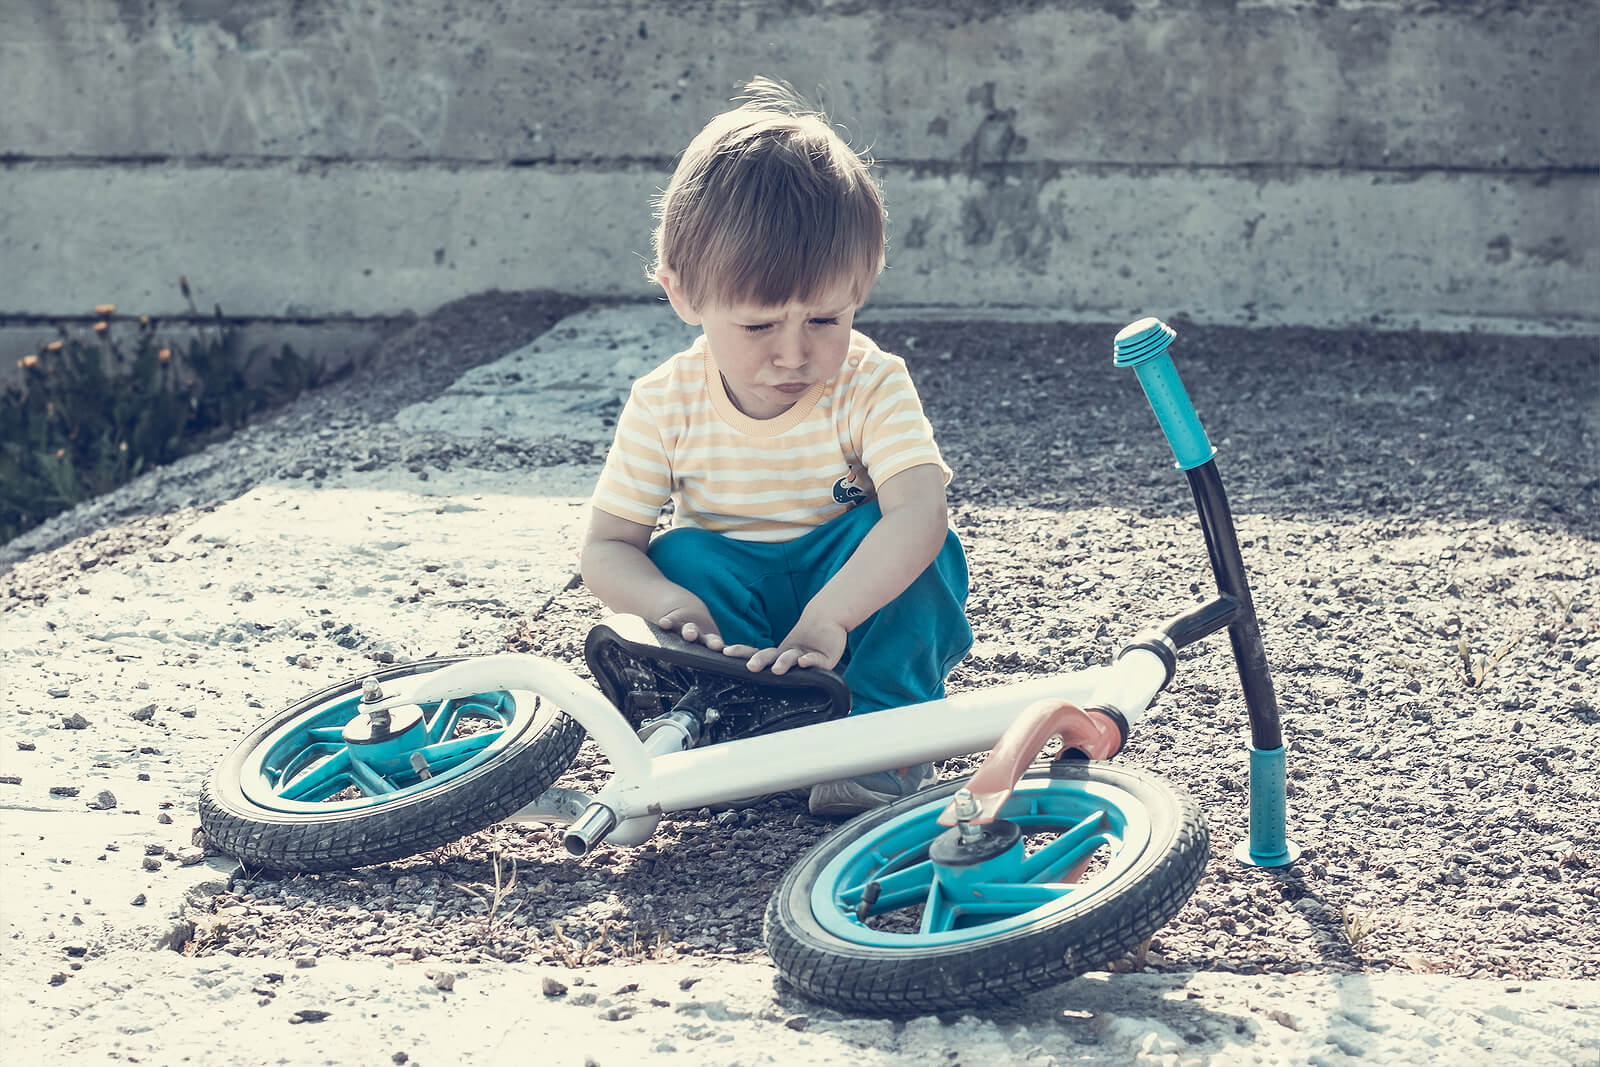 Niño de 2 años con la bicicleta tirada por el suelo.